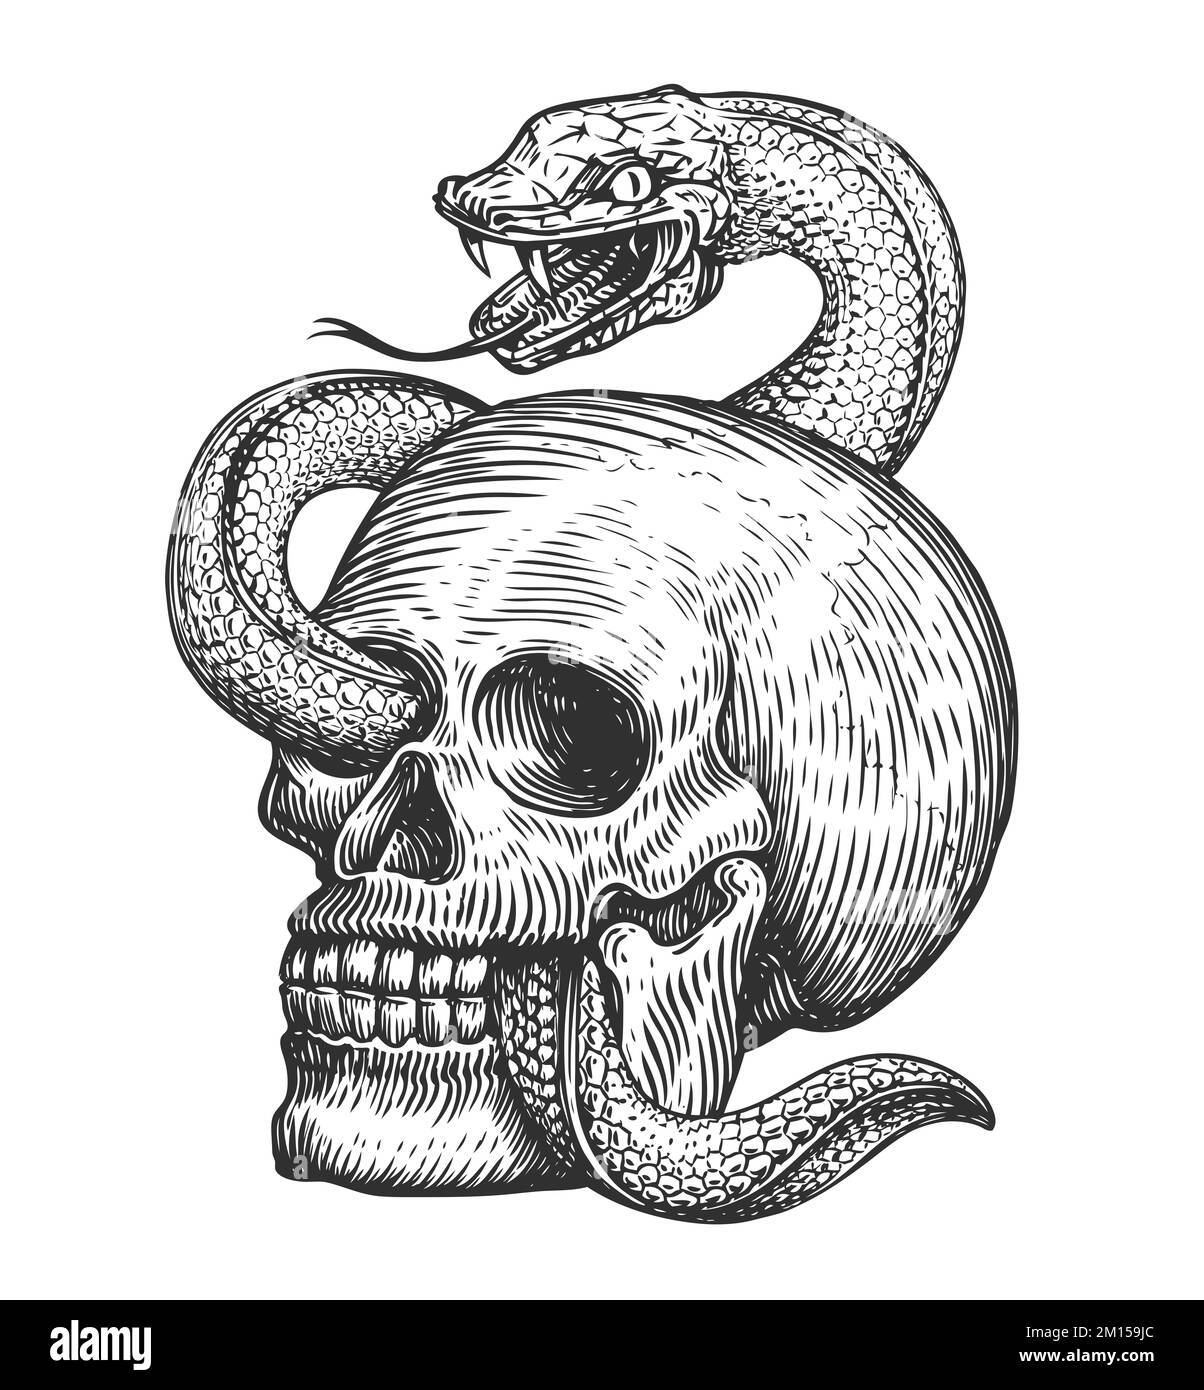 Serpente avvolge il cranio umano. Disegno disegnato a mano in stile vintage. Illustrazione del tatuaggio Foto Stock